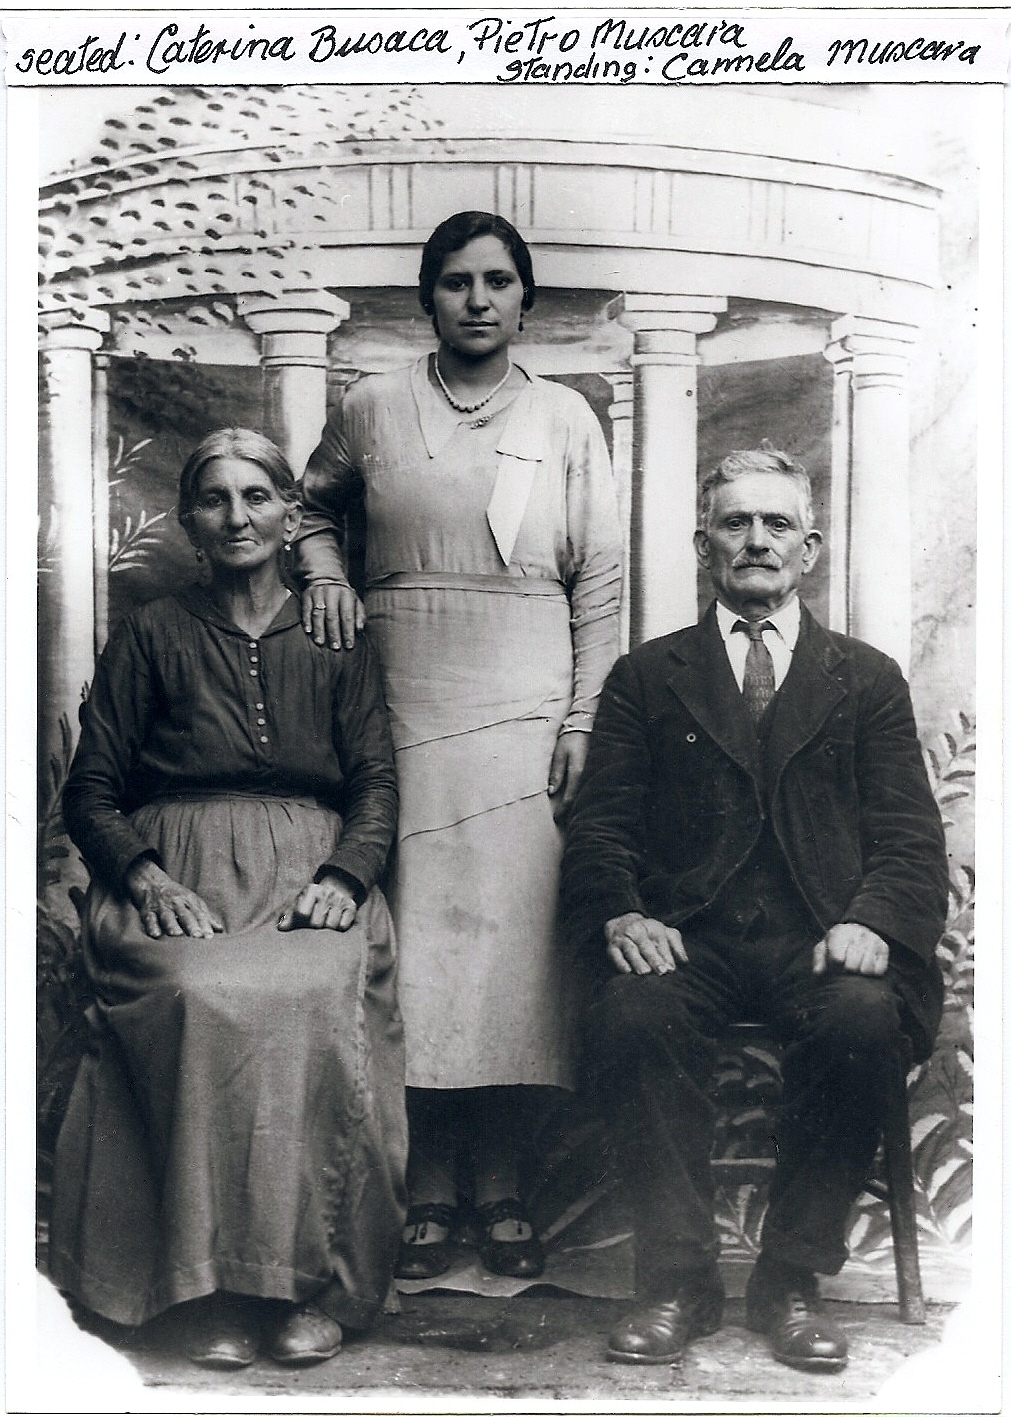 Pietro Muscarà family